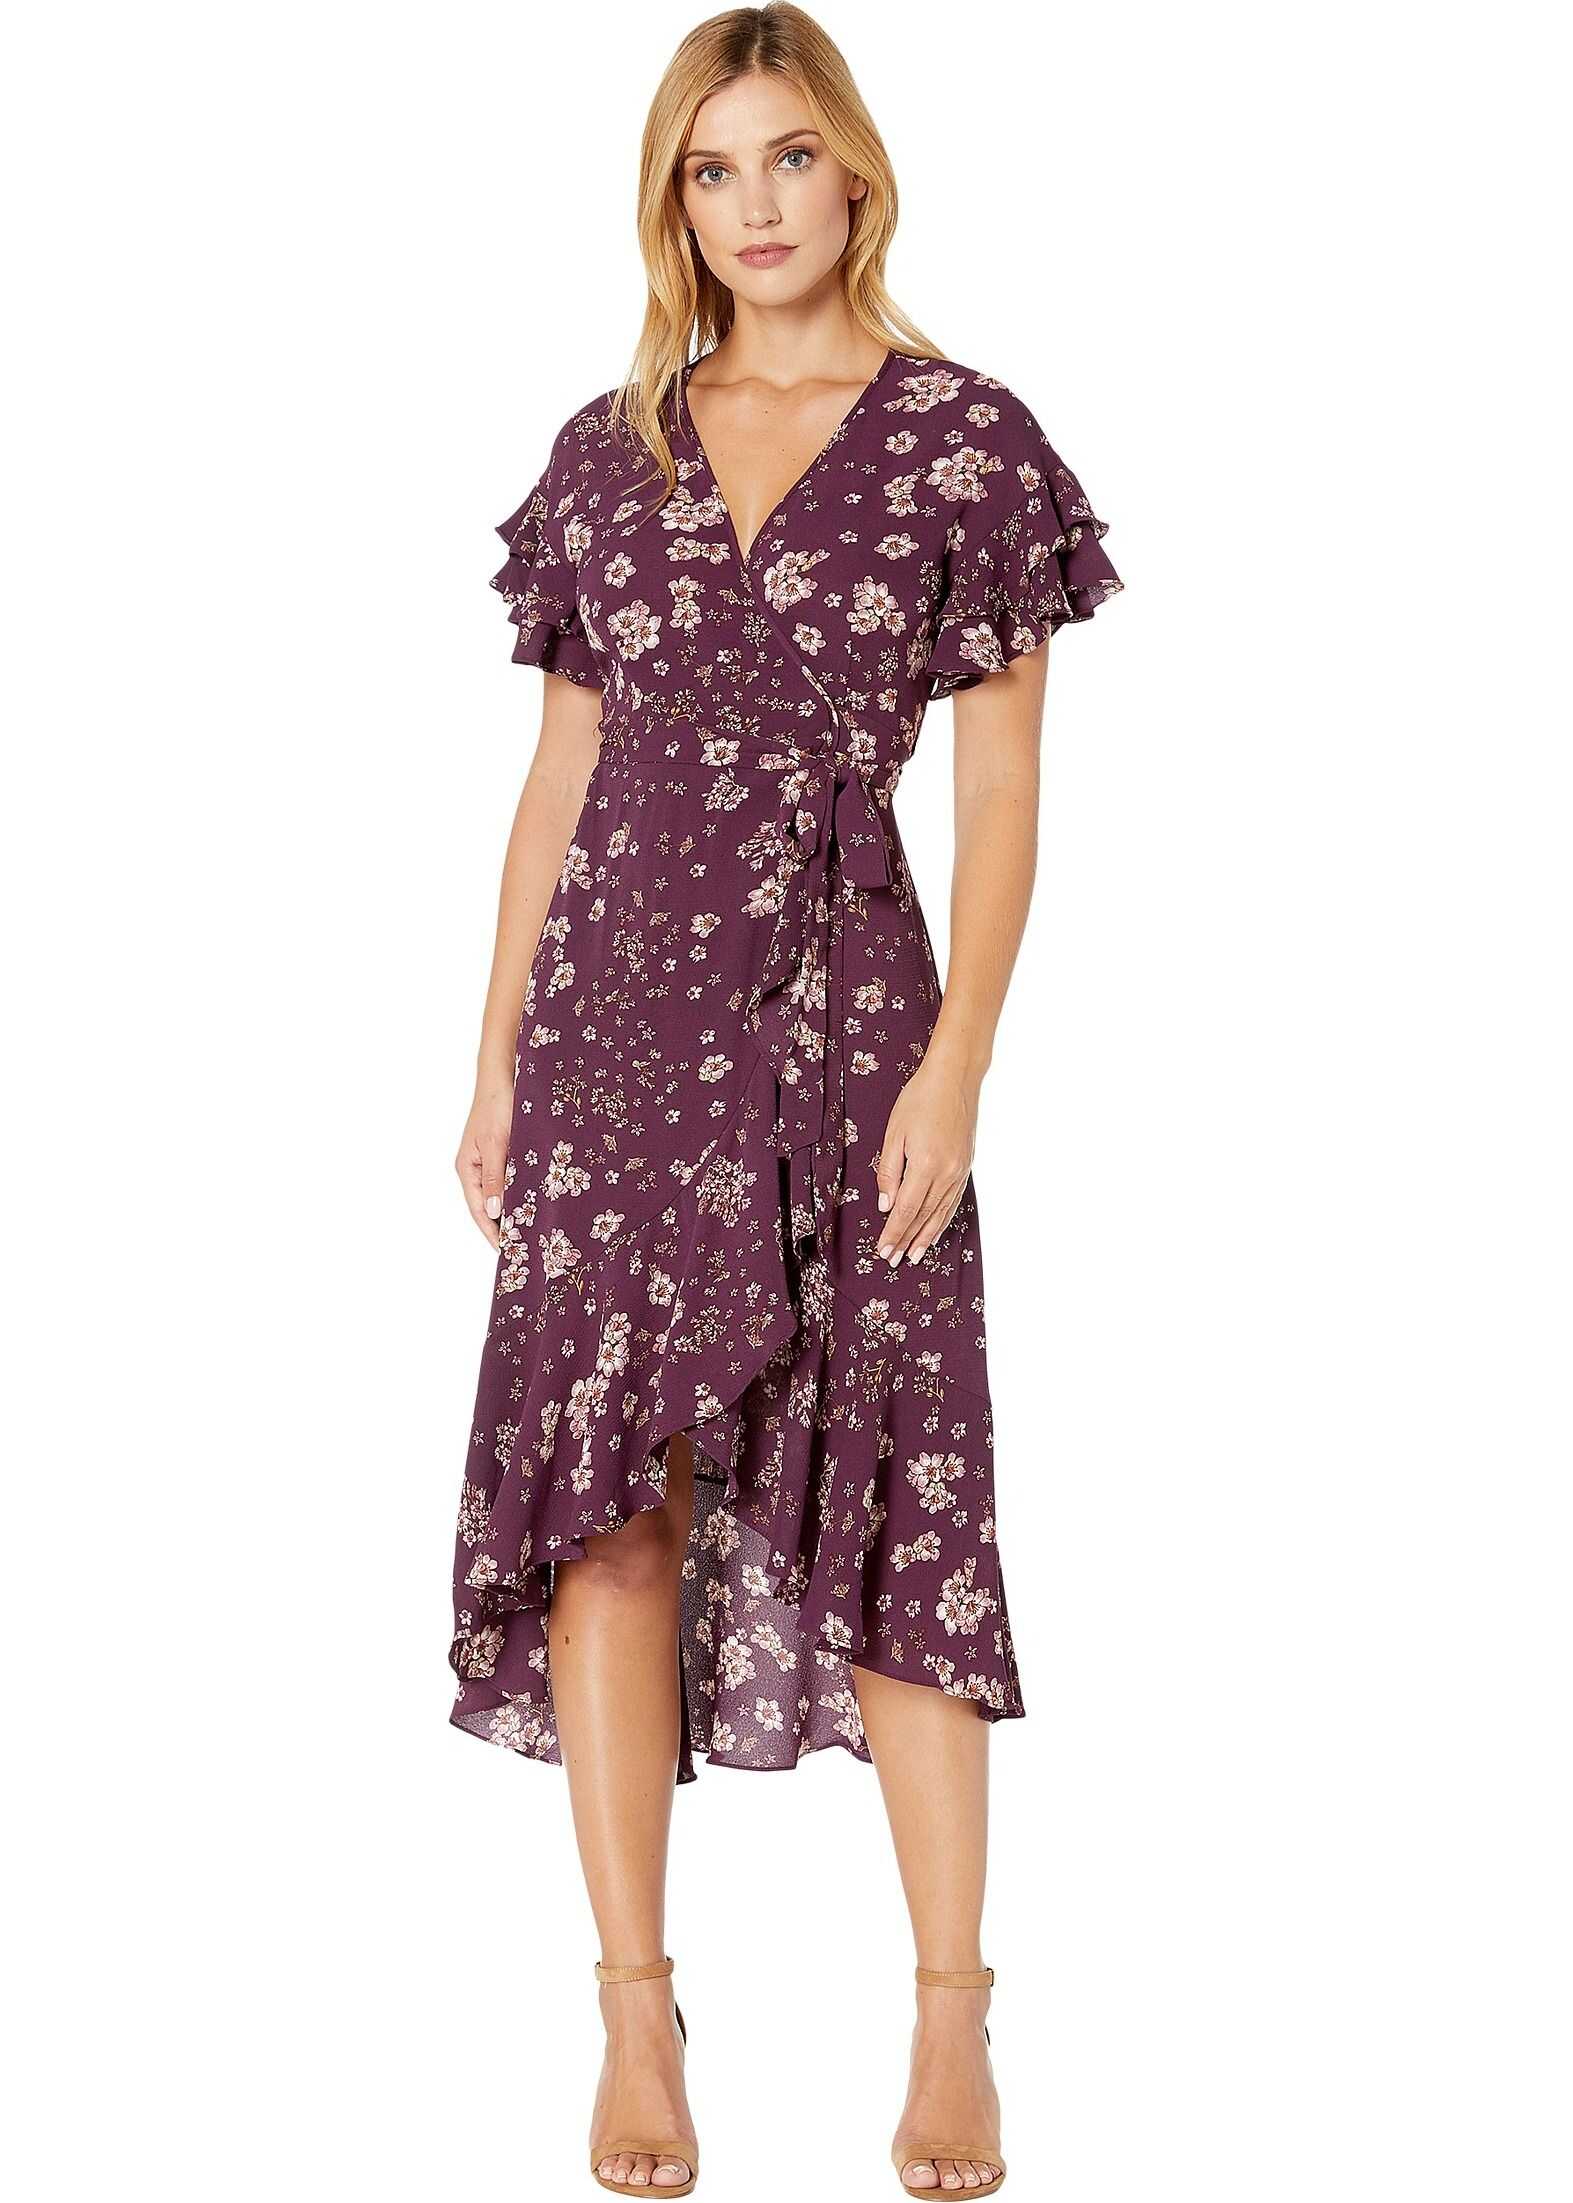 MAXSTUDIO Short Sleeve Woven Wrap Dress Purple/Mauve Floral Fields